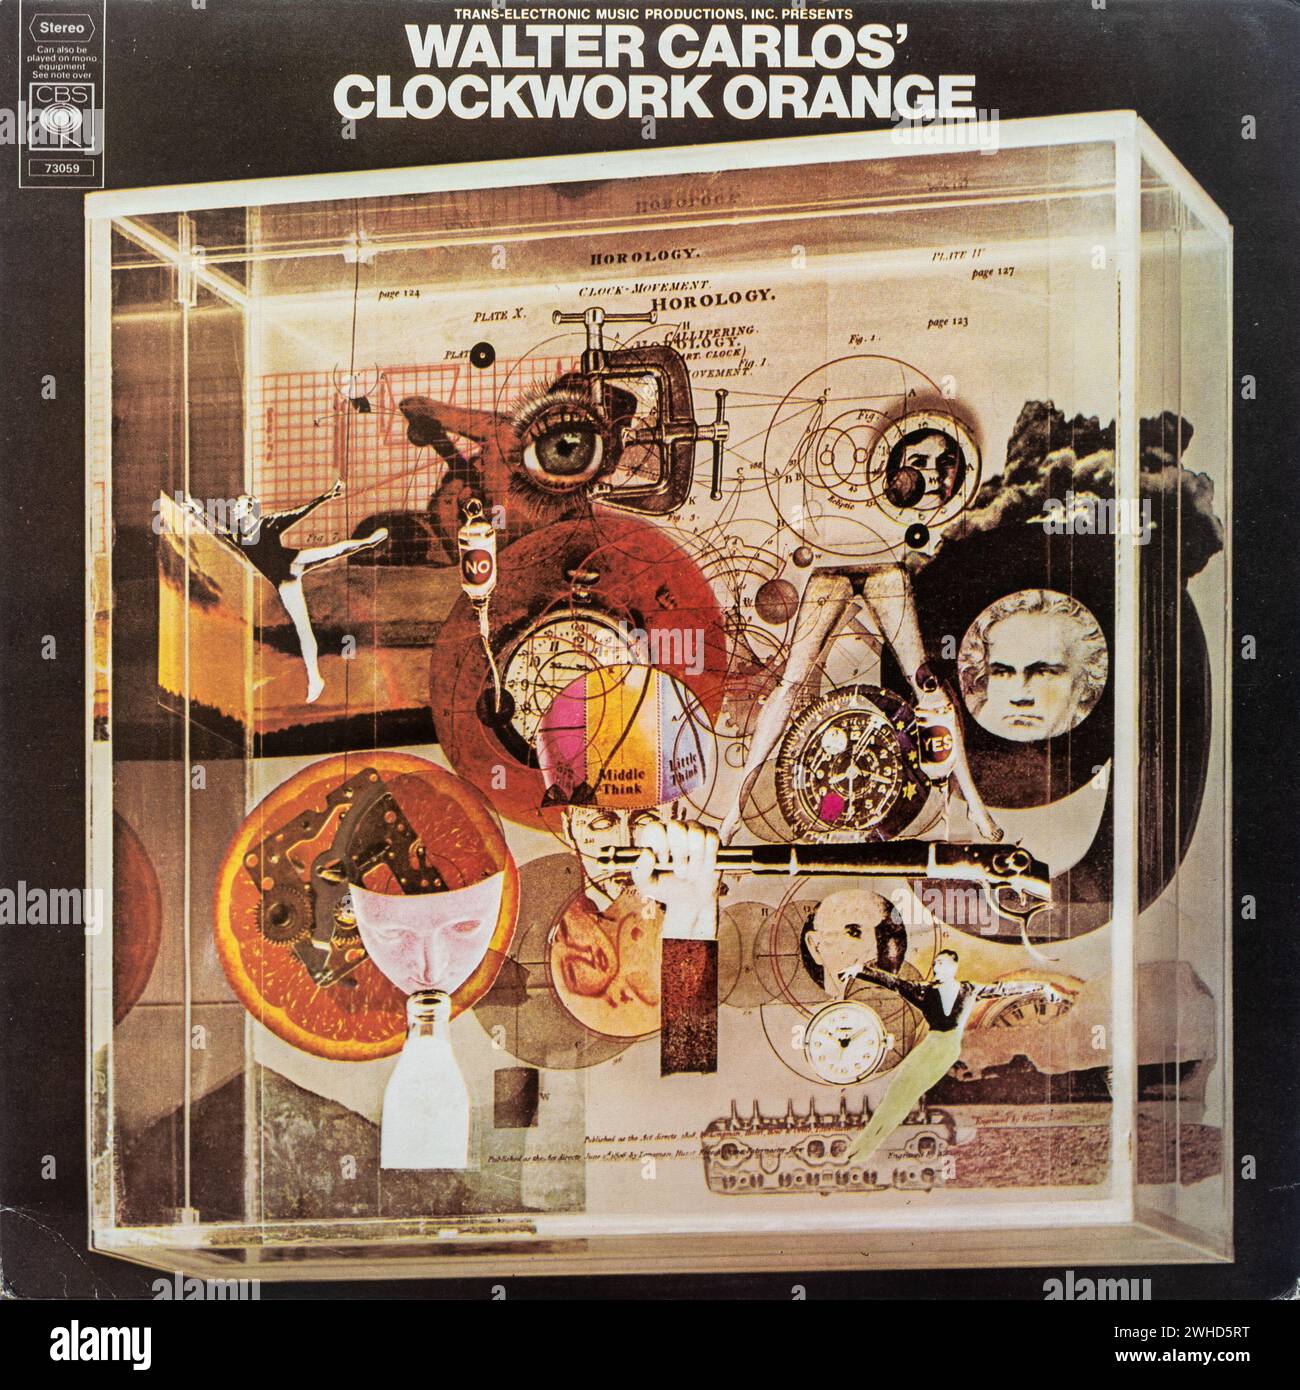 Walter Carlos Clockwork Orange Vinyl LP Album Cover (wendy carlos) Stockfoto